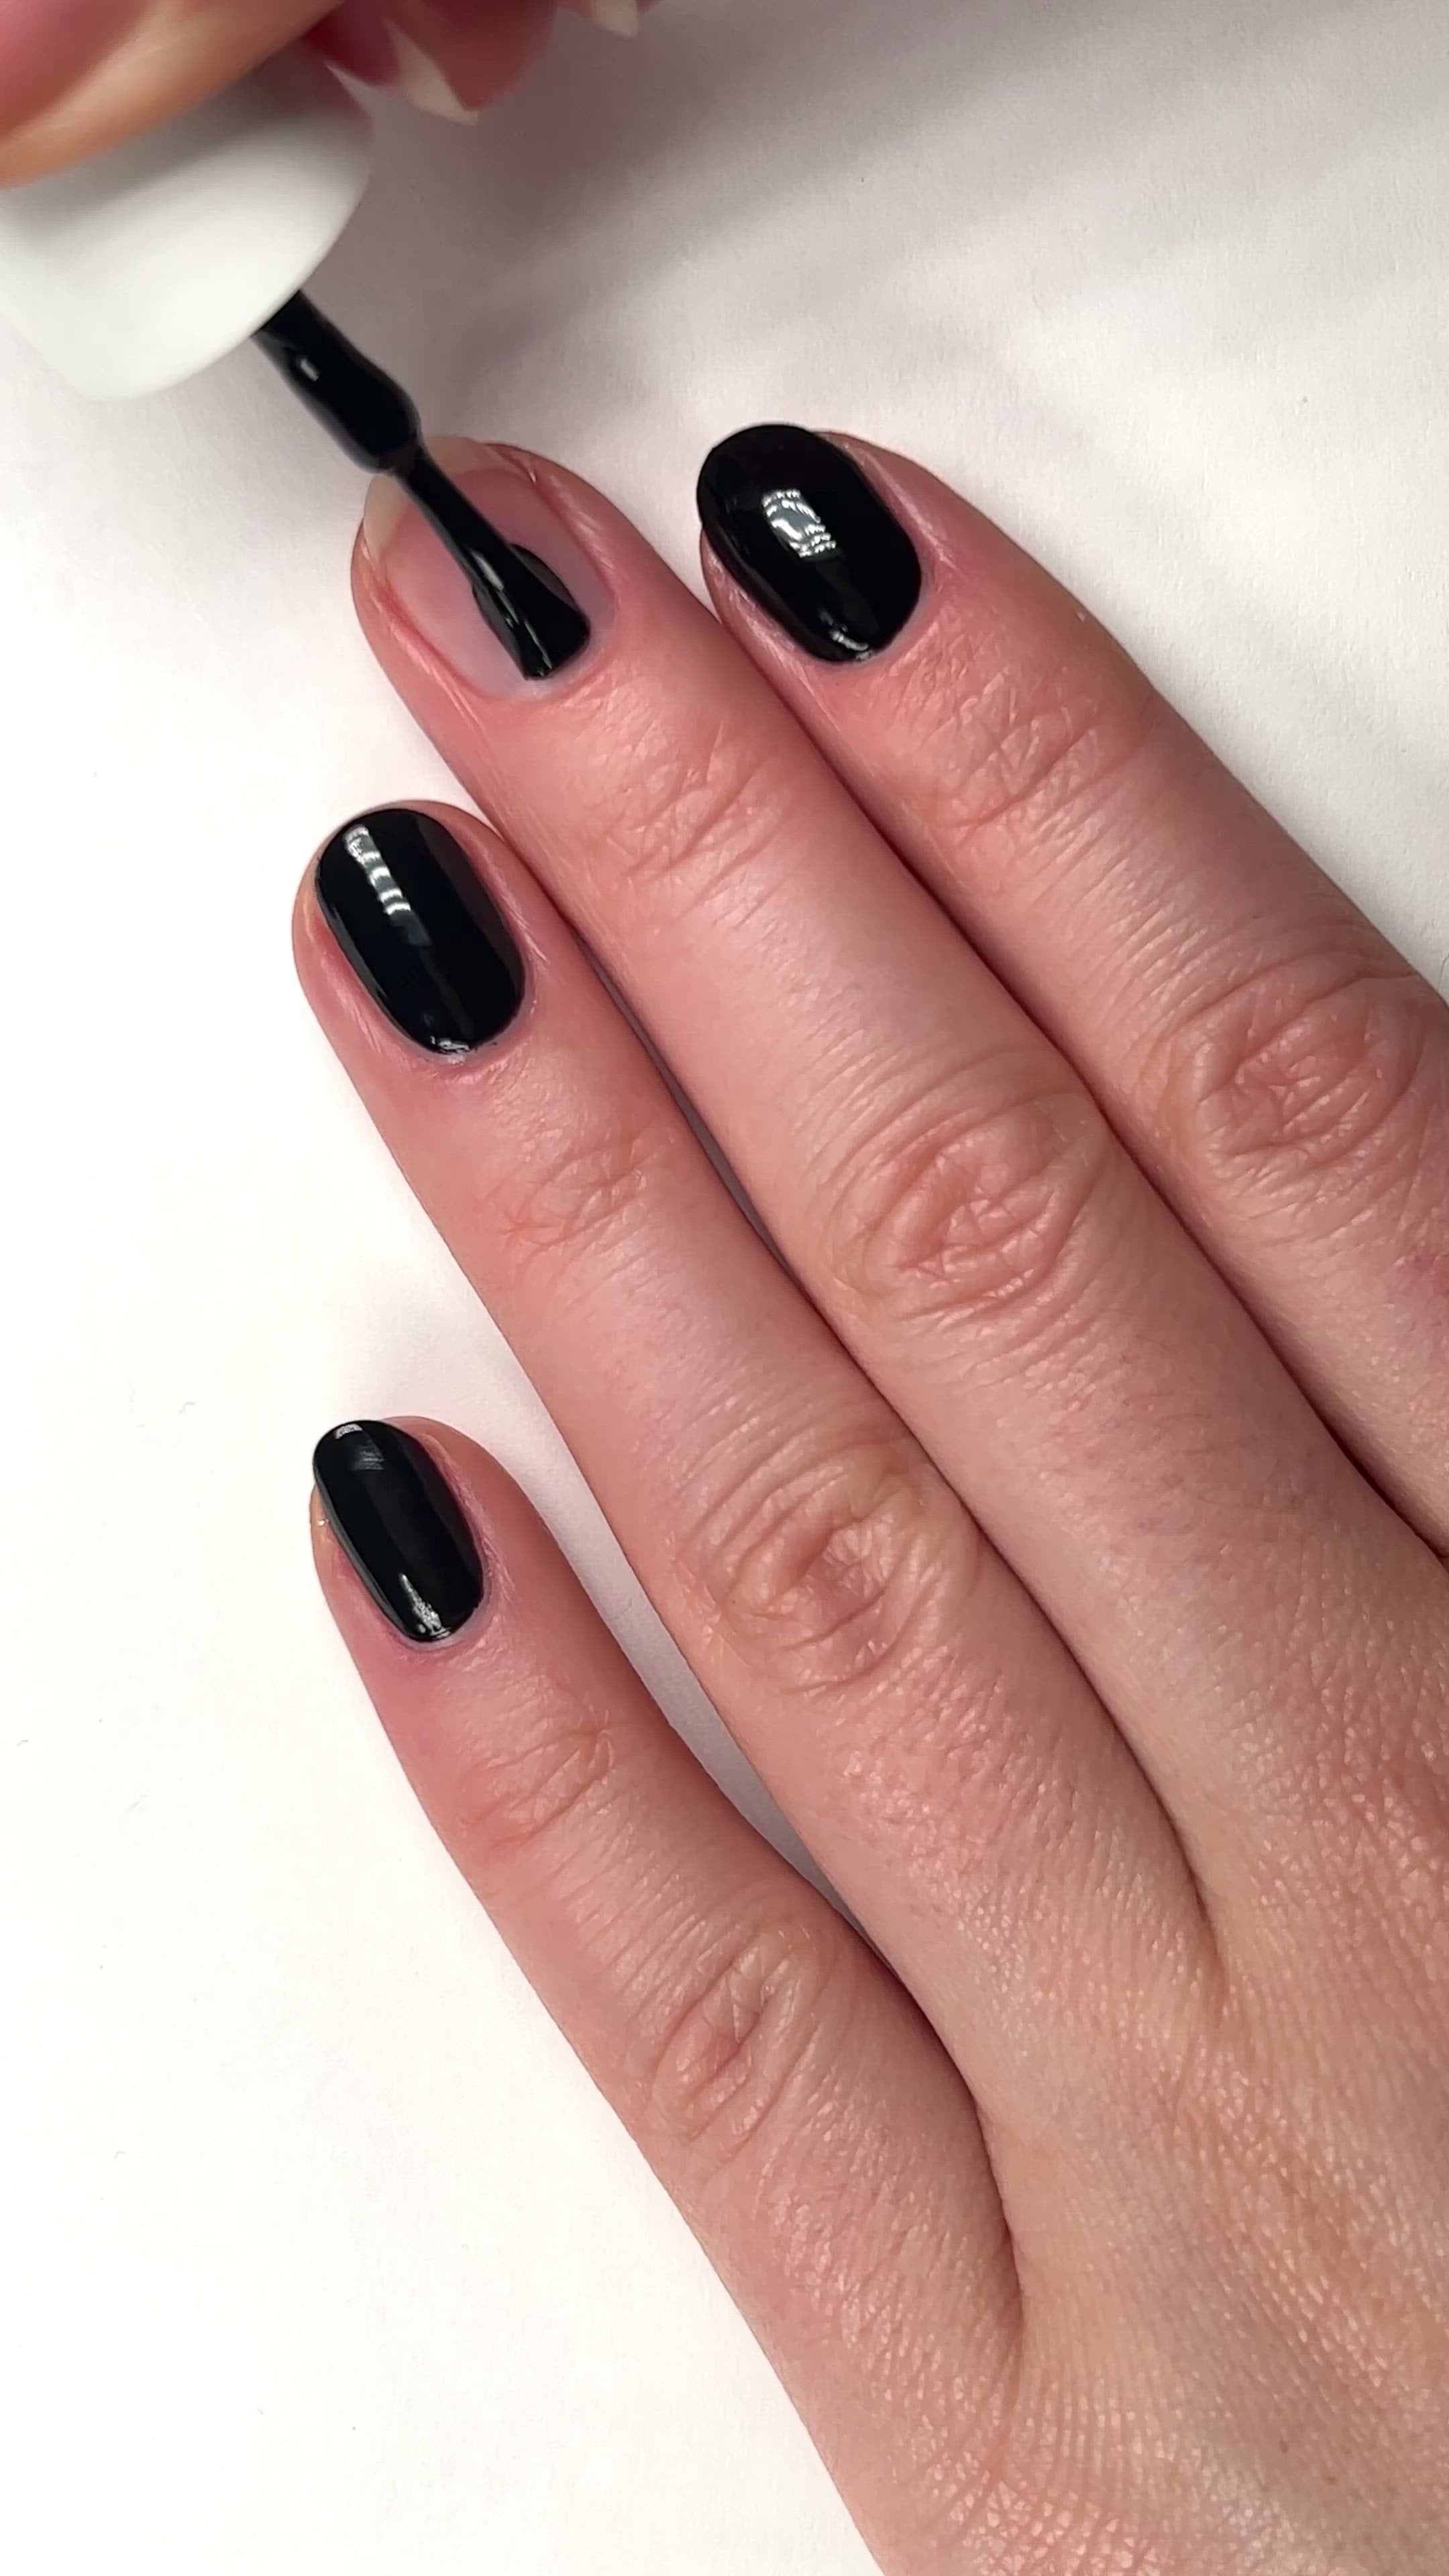 Painting Nails with Black Nail Polish